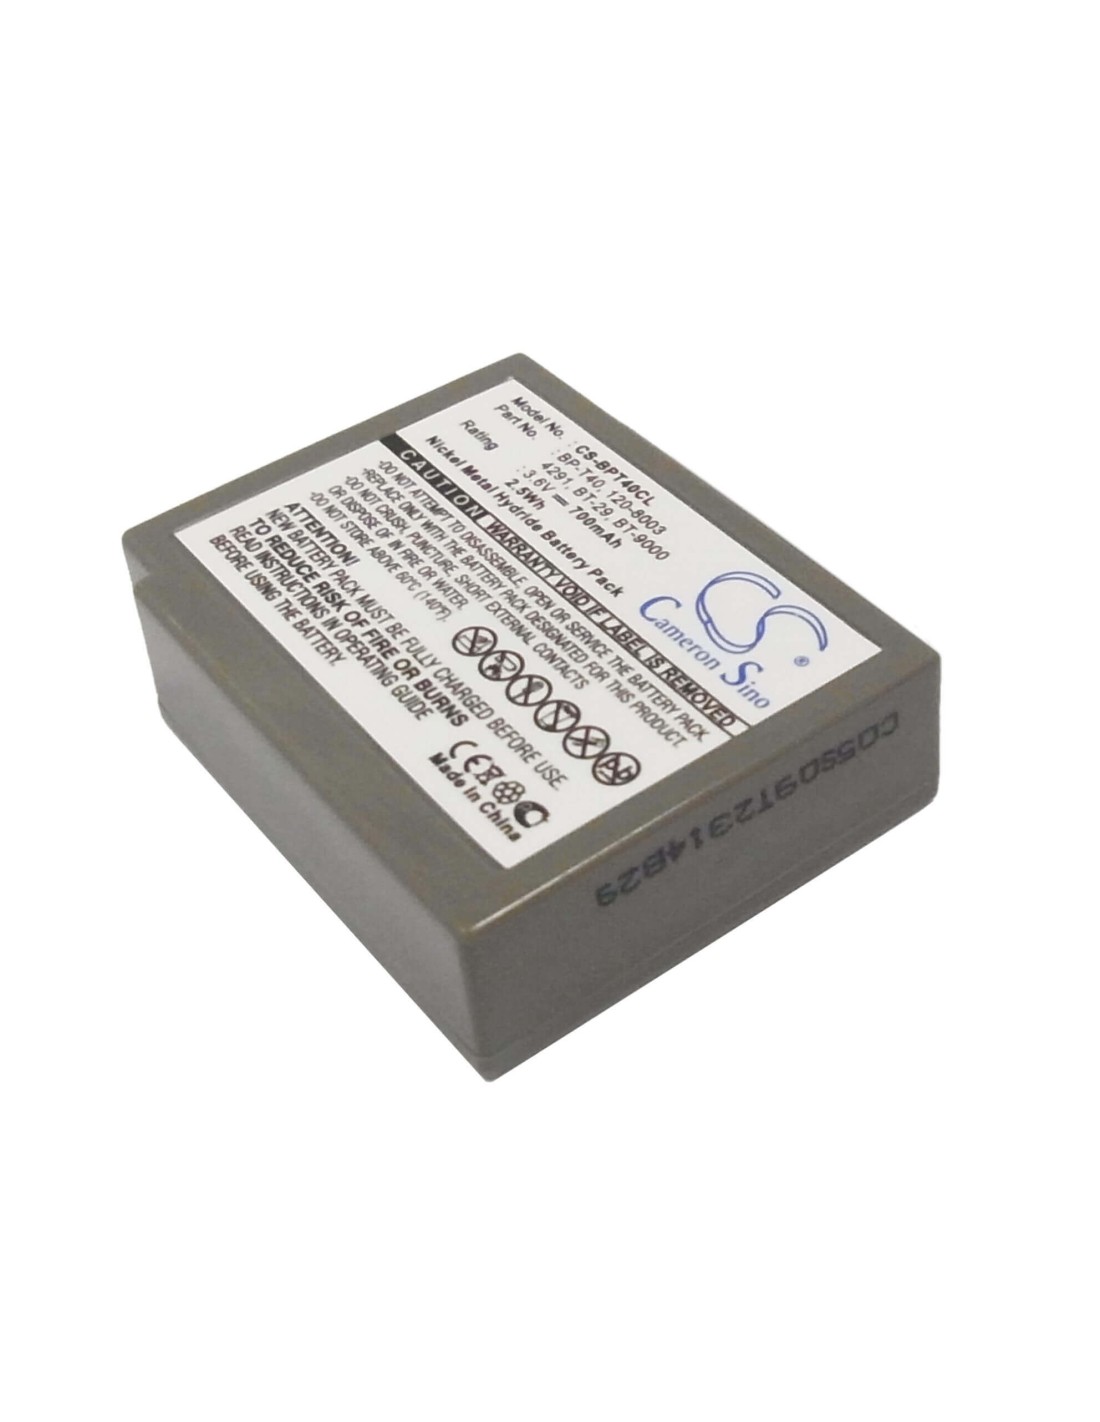 Battery for Sony, Sct-100, Spp-1010, Spp-115, Spp-120, 3.6V, 700mAh - 2.52Wh